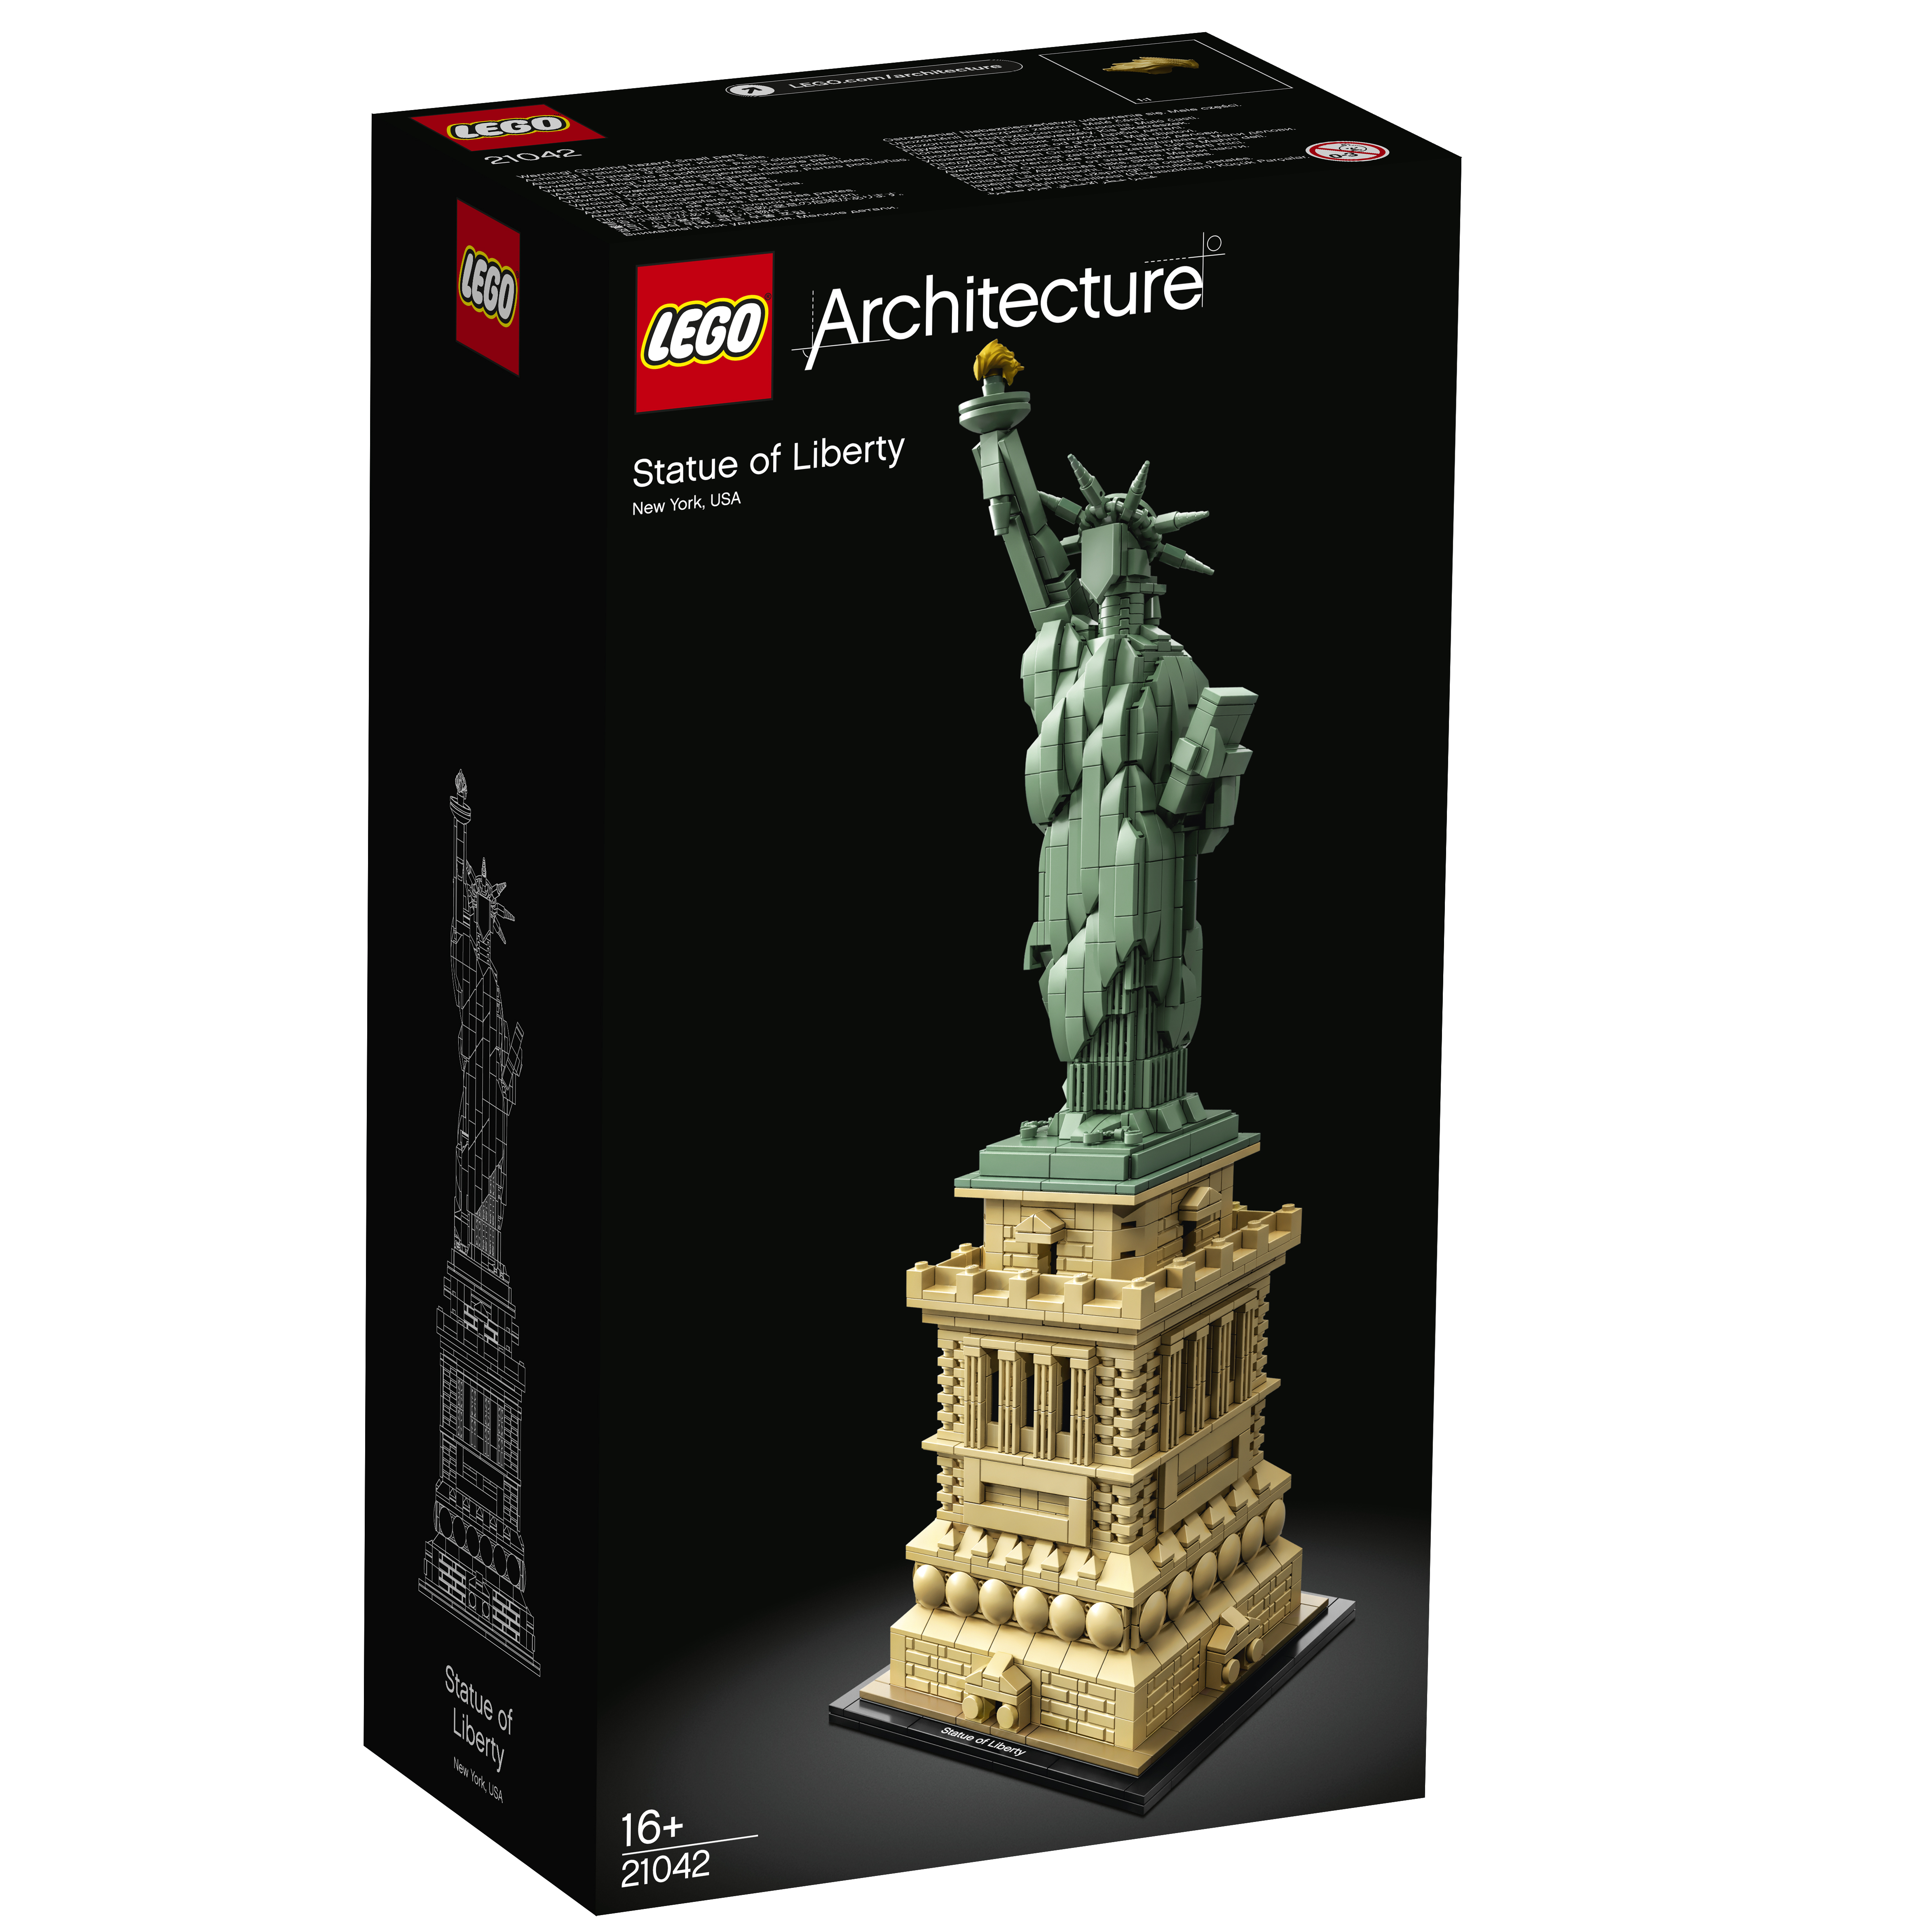 LEGO Freiheitsstatue Bausatz, 21042 Architecture Mehrfarbig